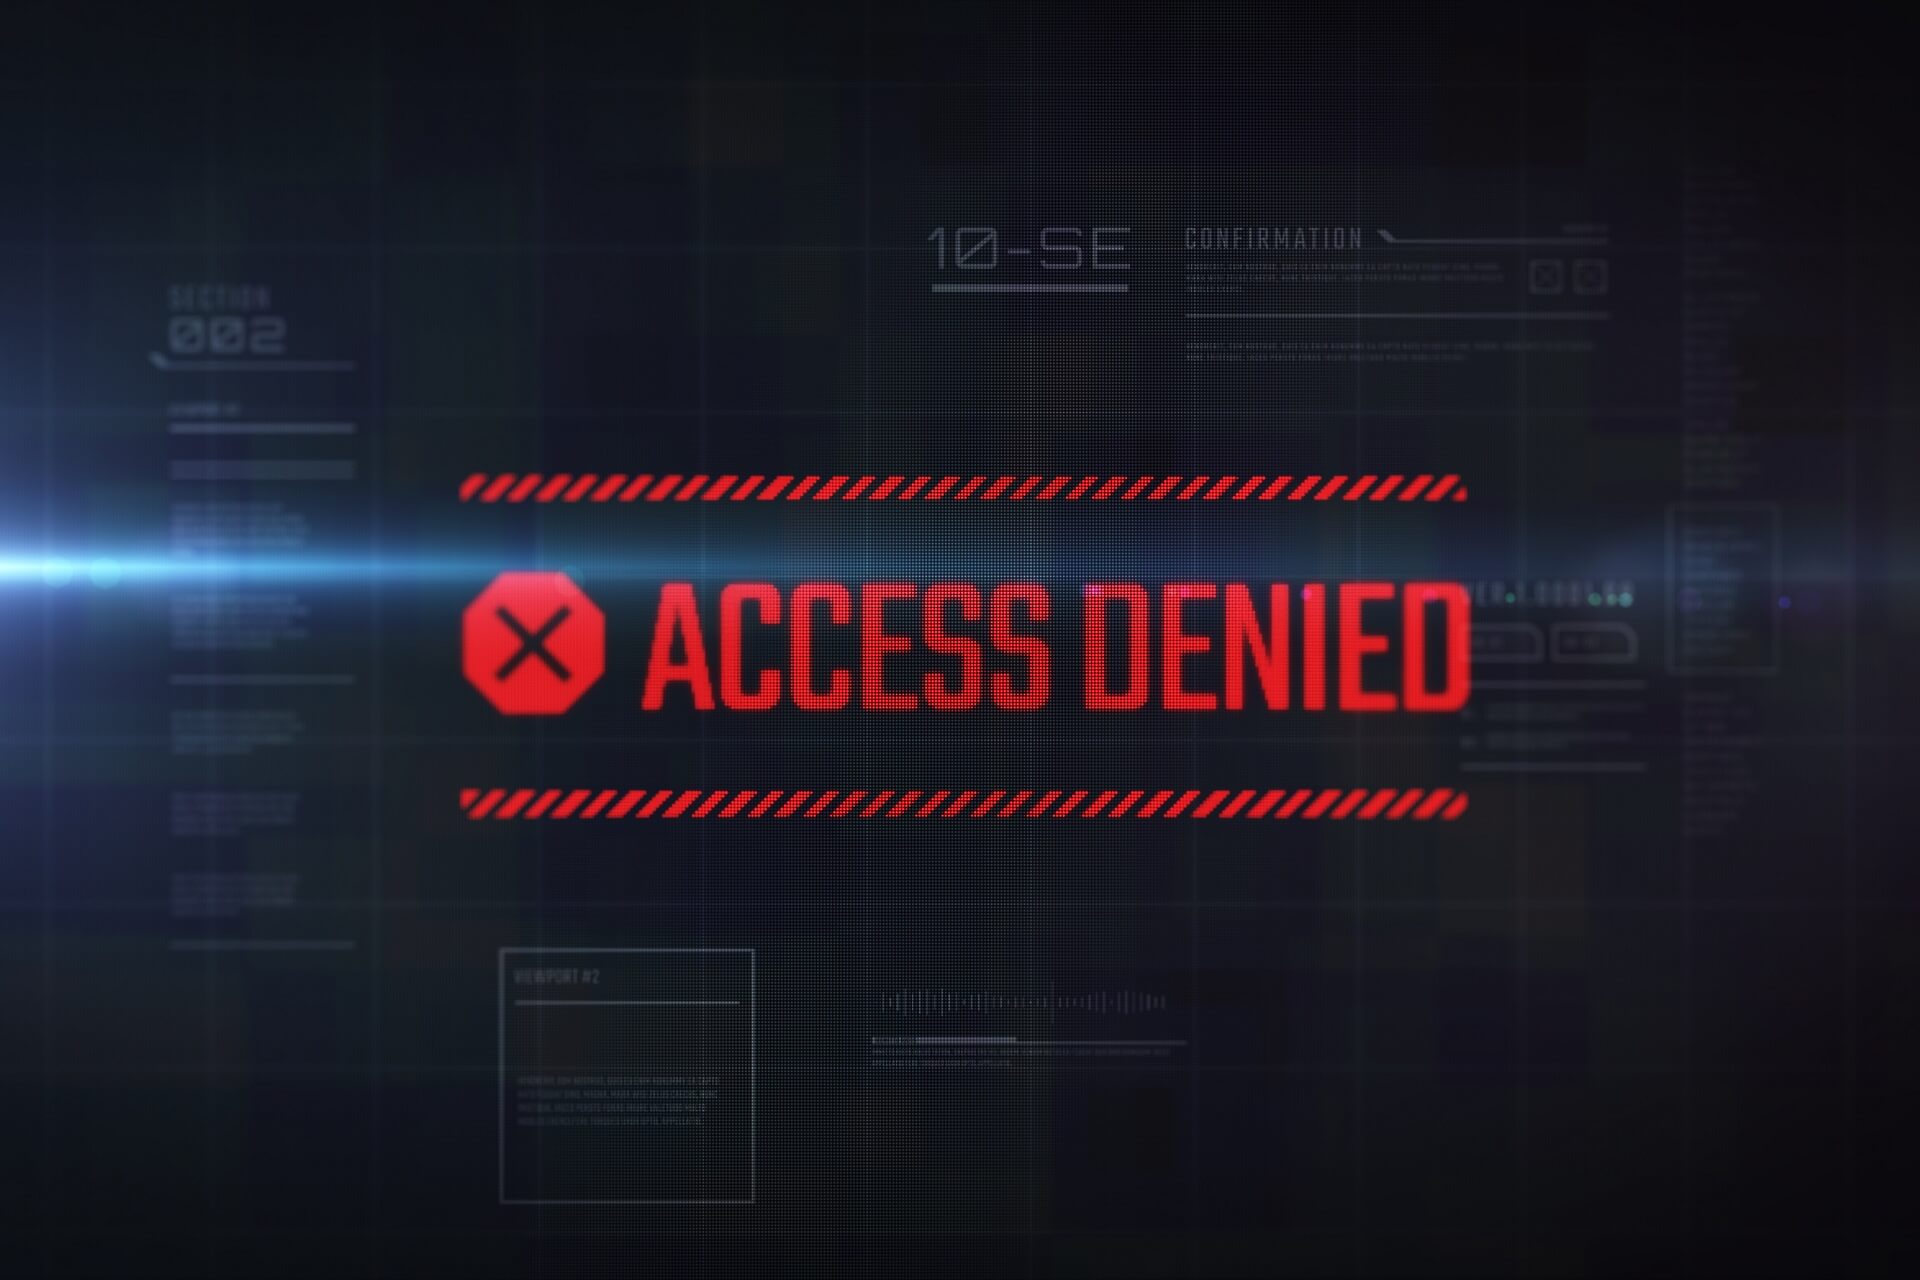 hjsplit file access denied